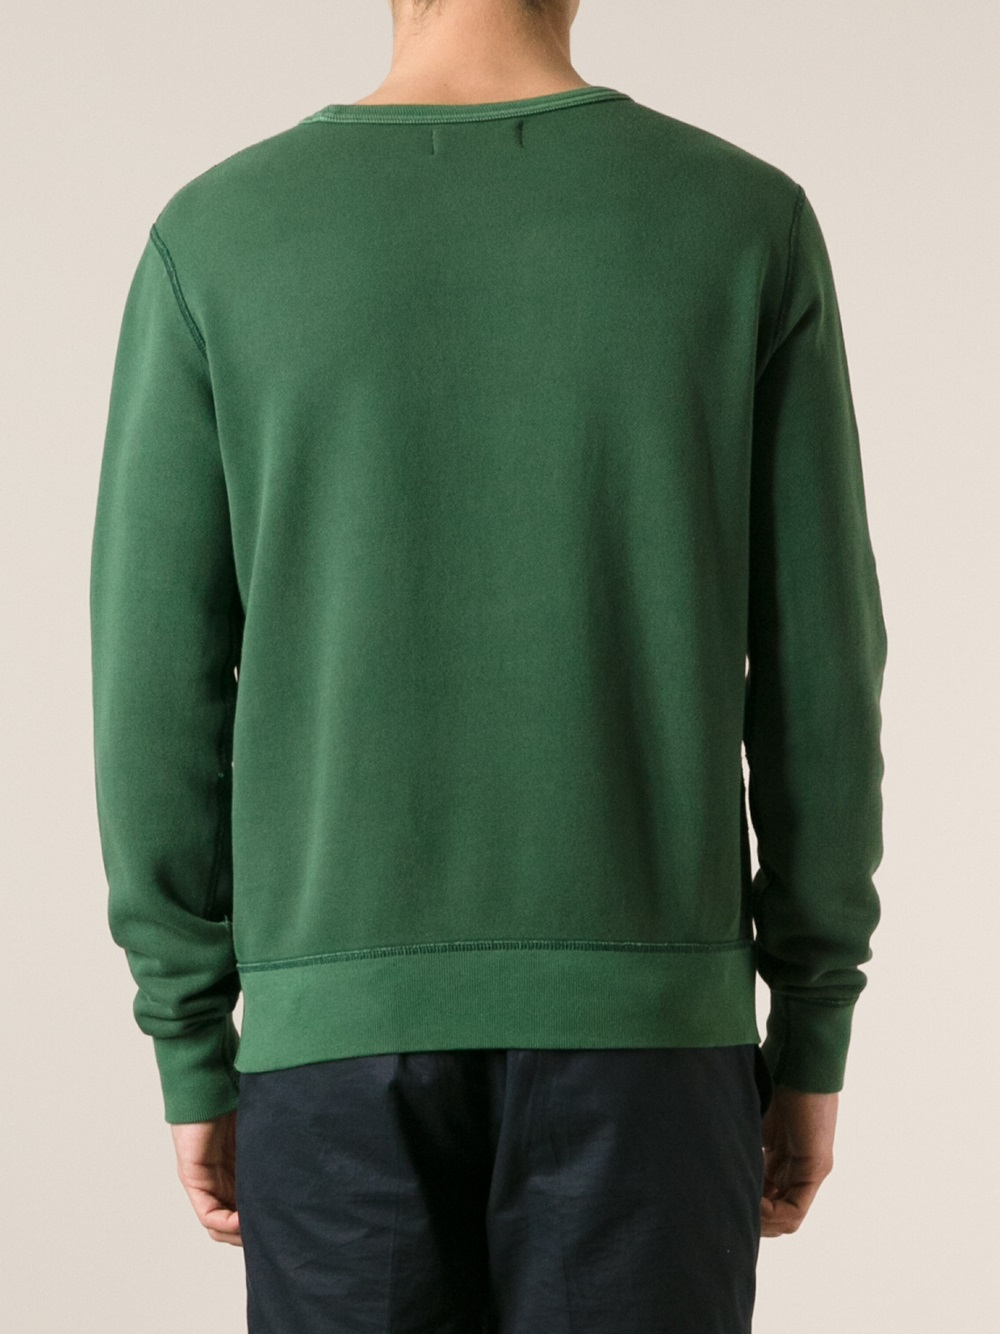 Lyst - Polo Ralph Lauren Printed Sweatshirt in Green for Men